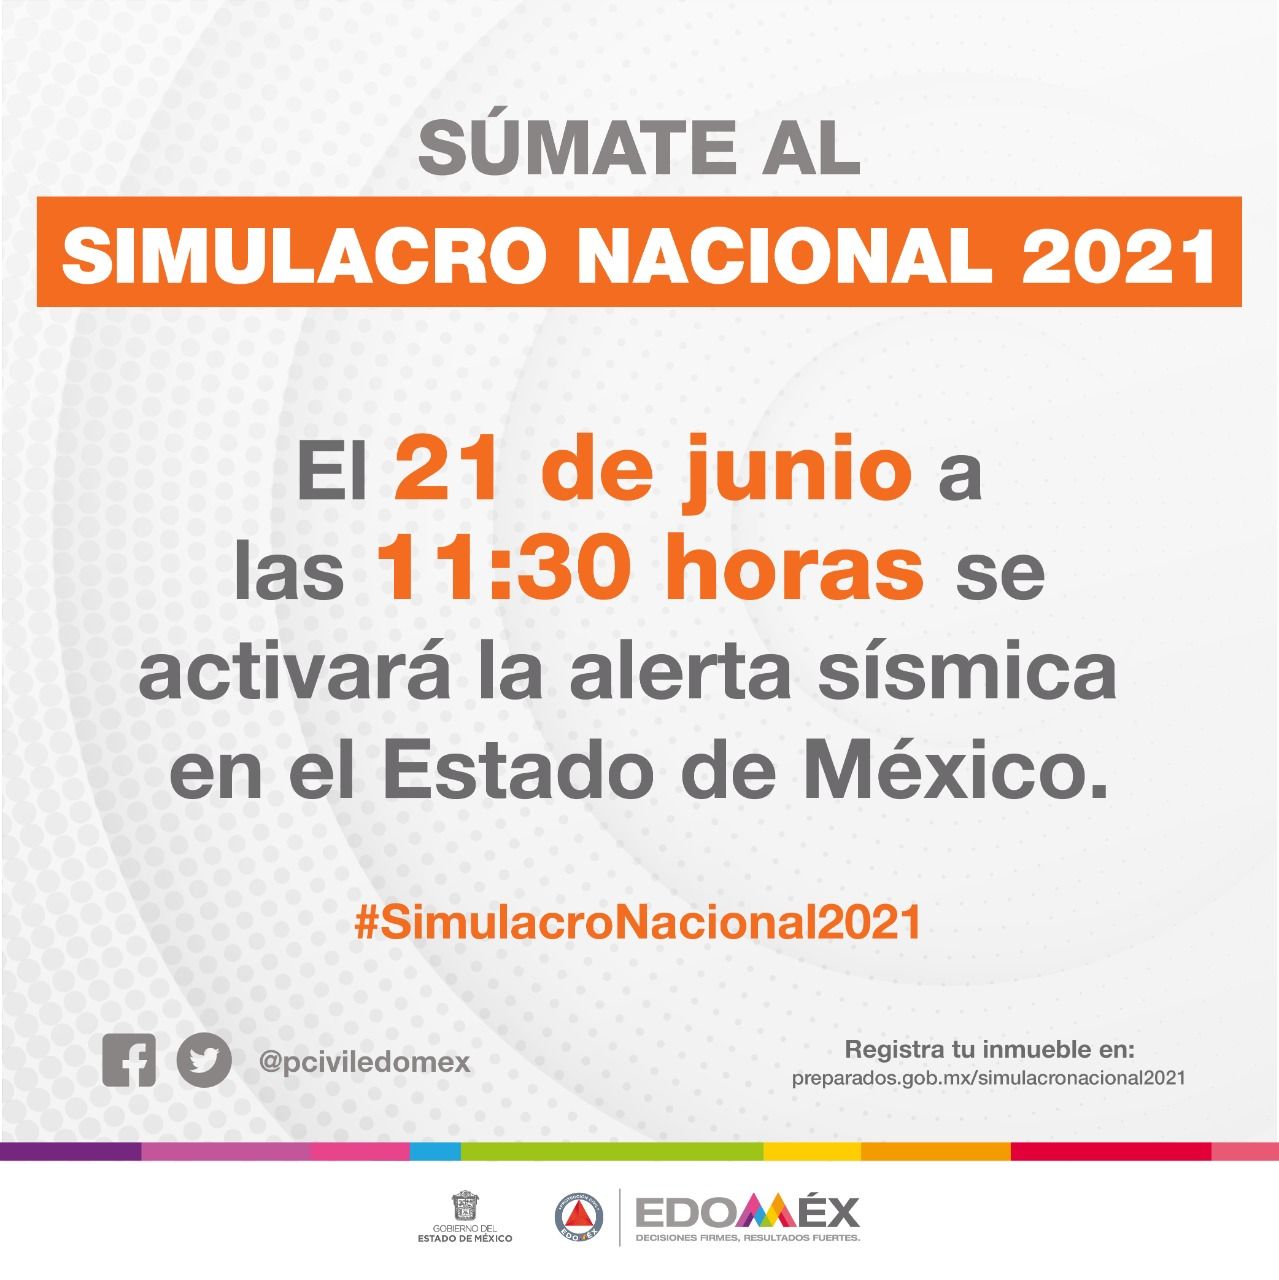 Anuncia EDOMÉX simulacro nacional 2021 el próximo 21 de junio